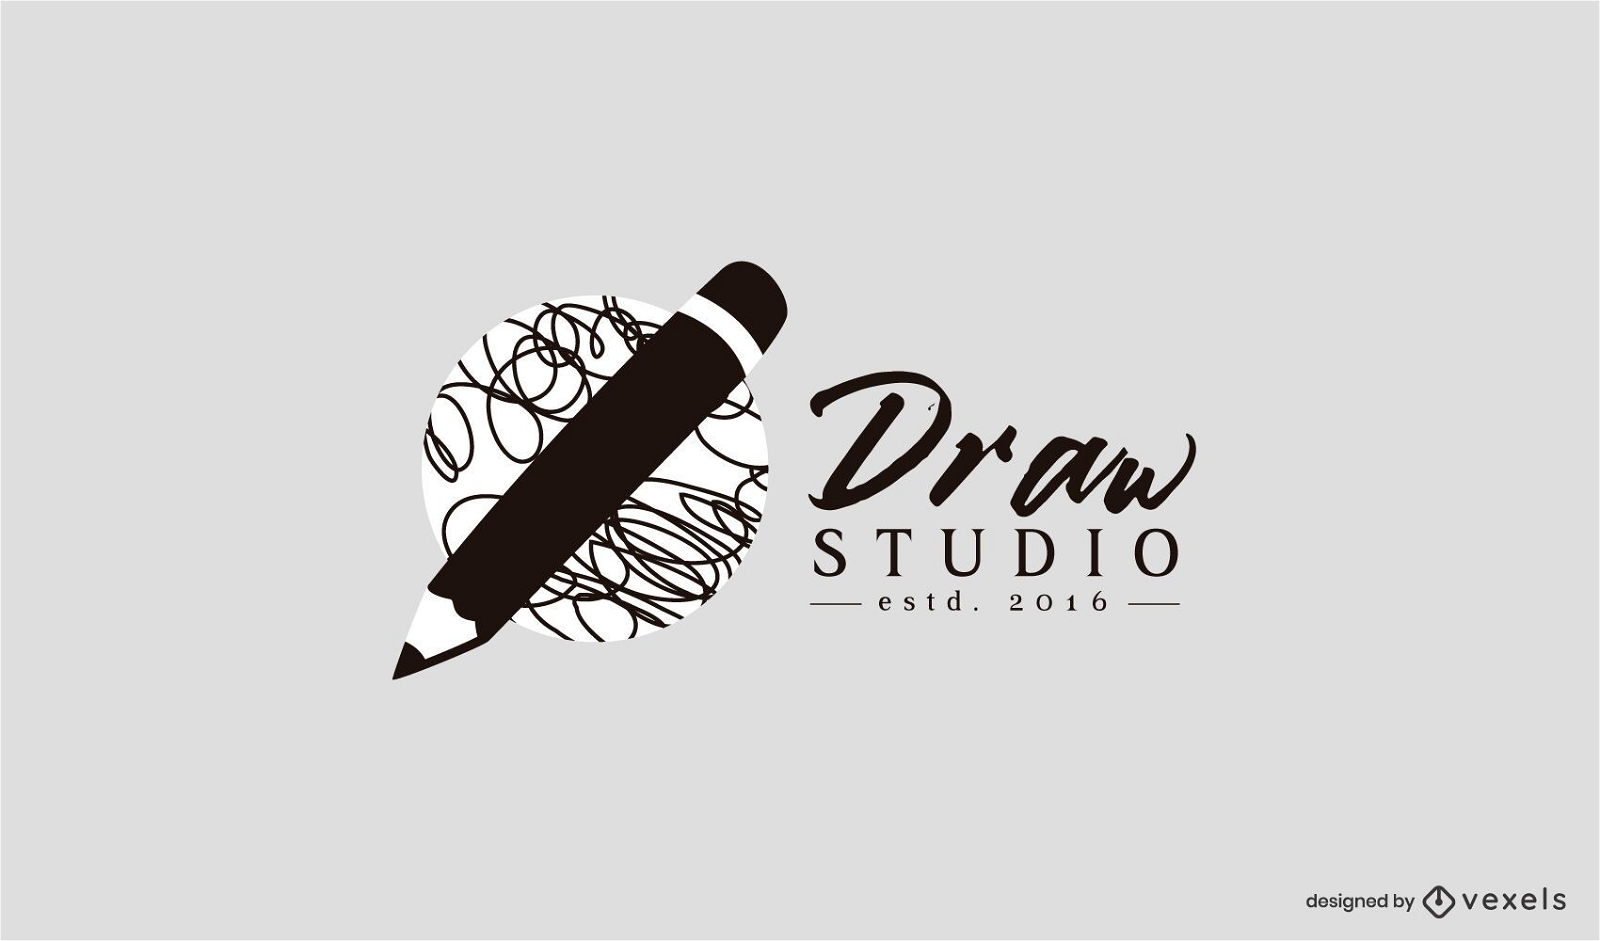 Zeichnen Sie eine Studio-Logo-Vorlage